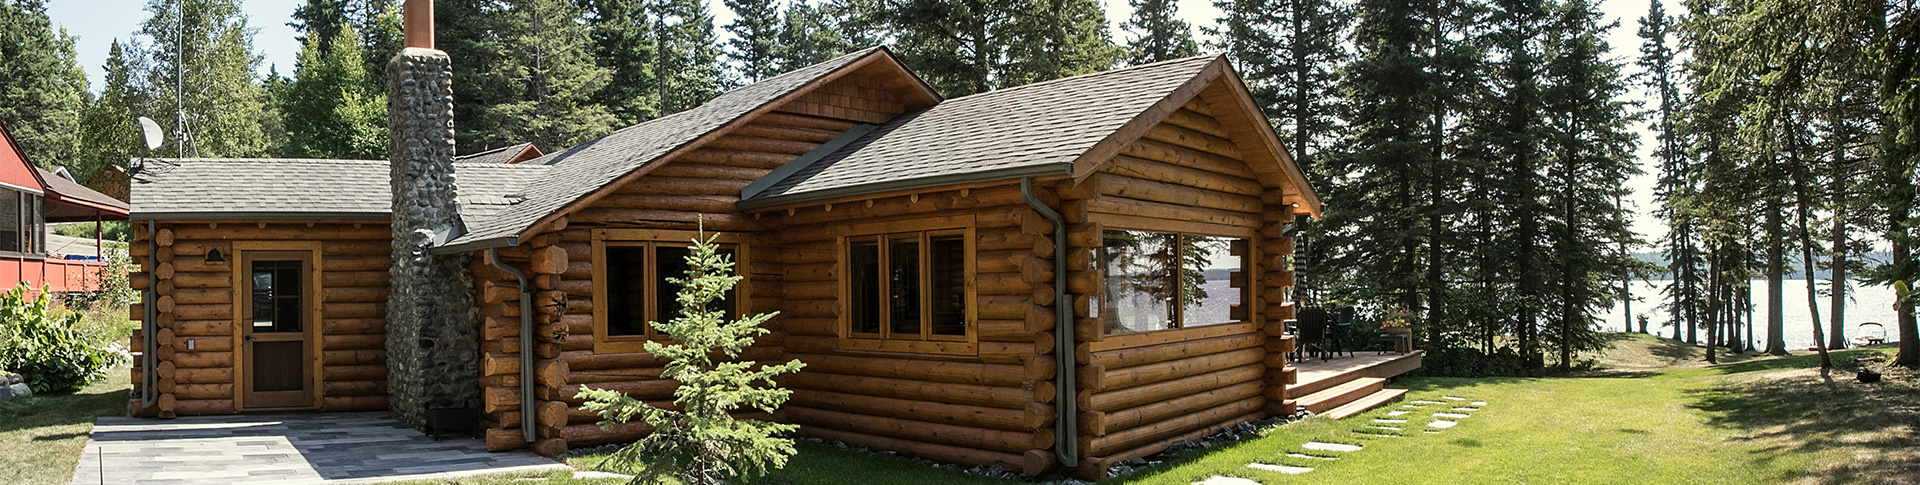 Custom Wood Home